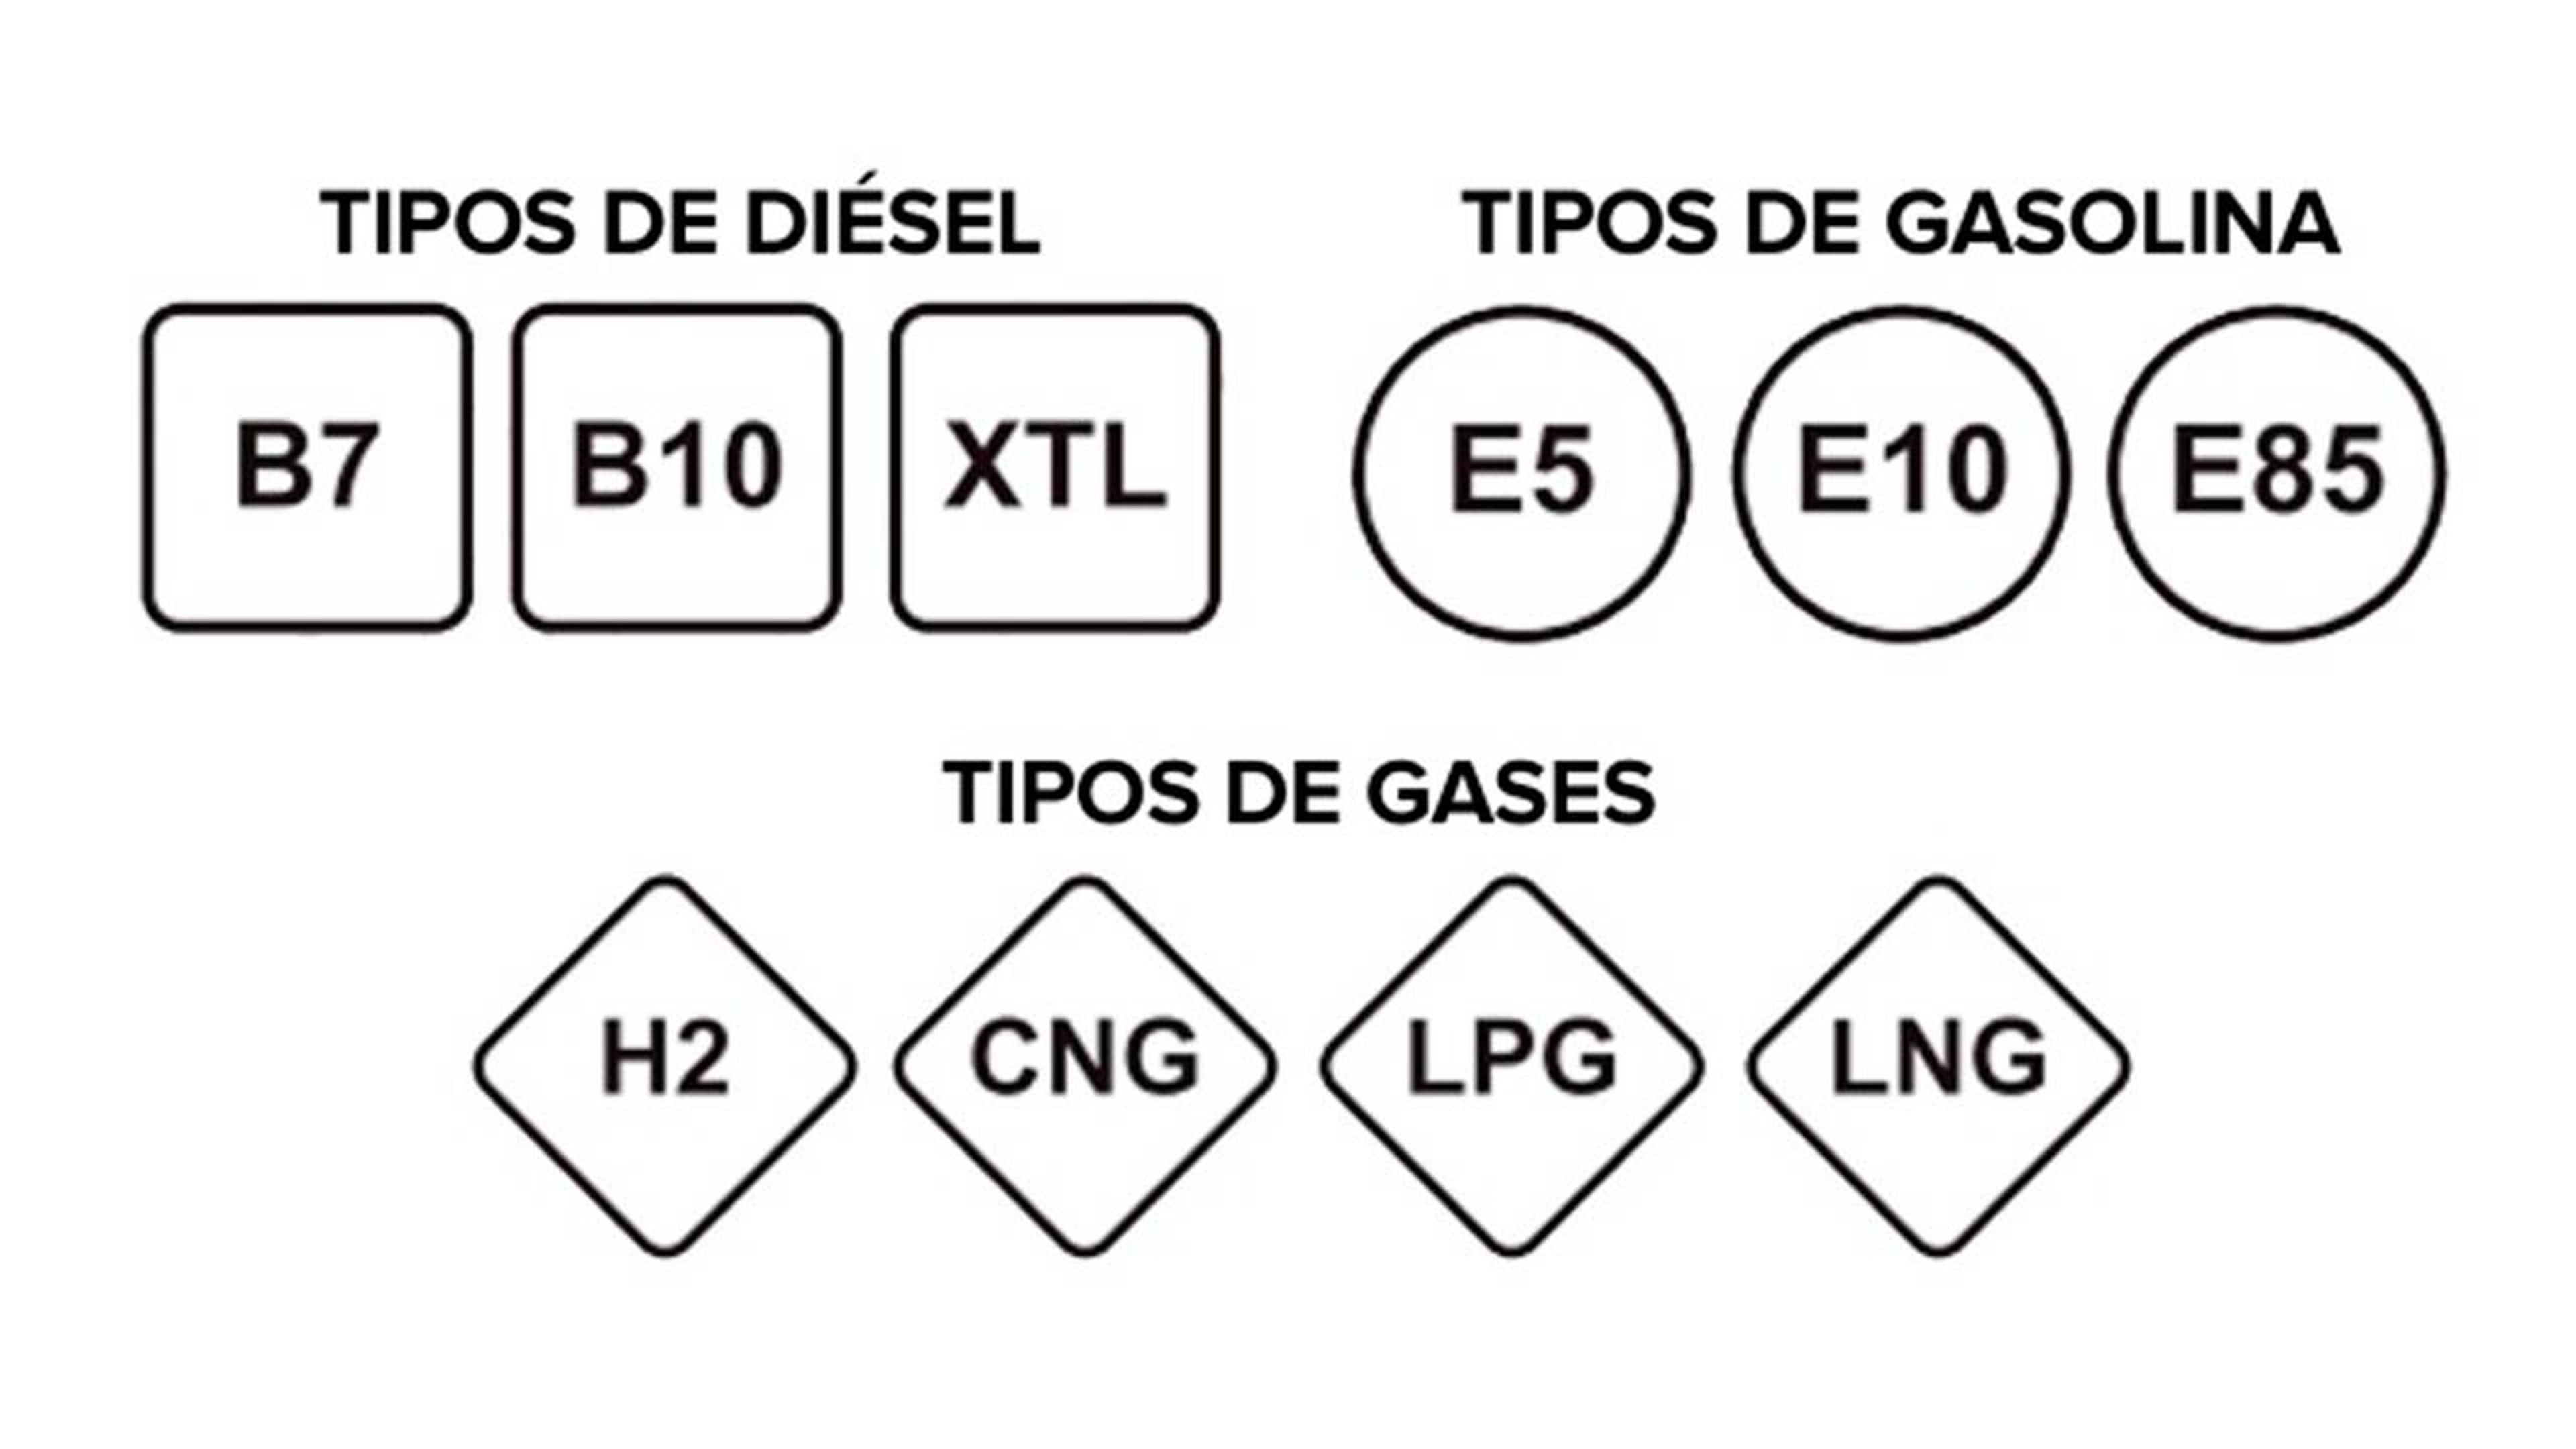 Los nuevos tipos de gasolina y diésel, ¿a qué combustible actual equivalen?